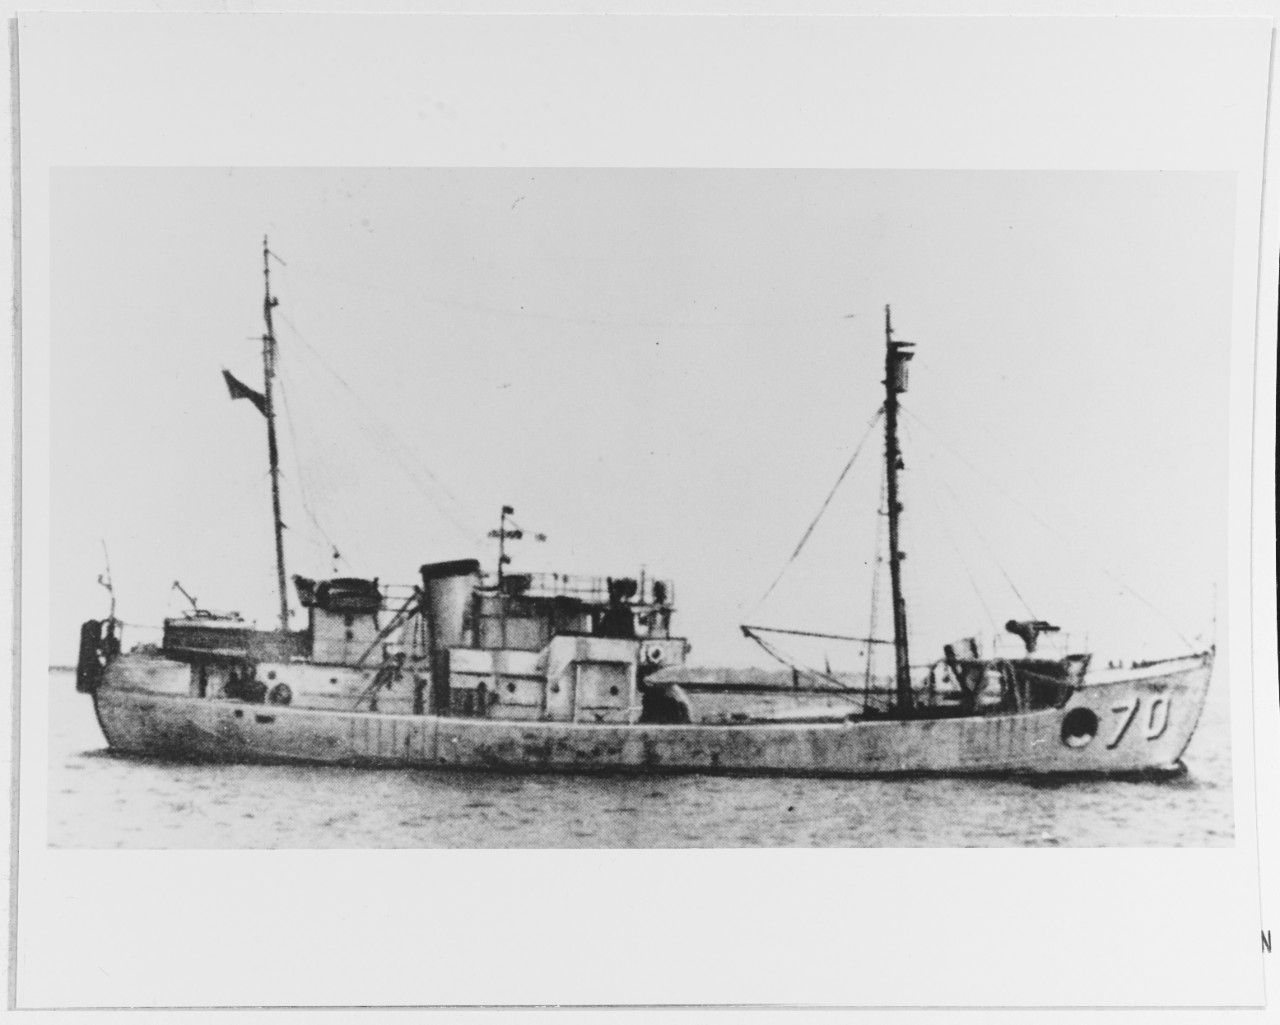 USS FLICKER (AM-70)